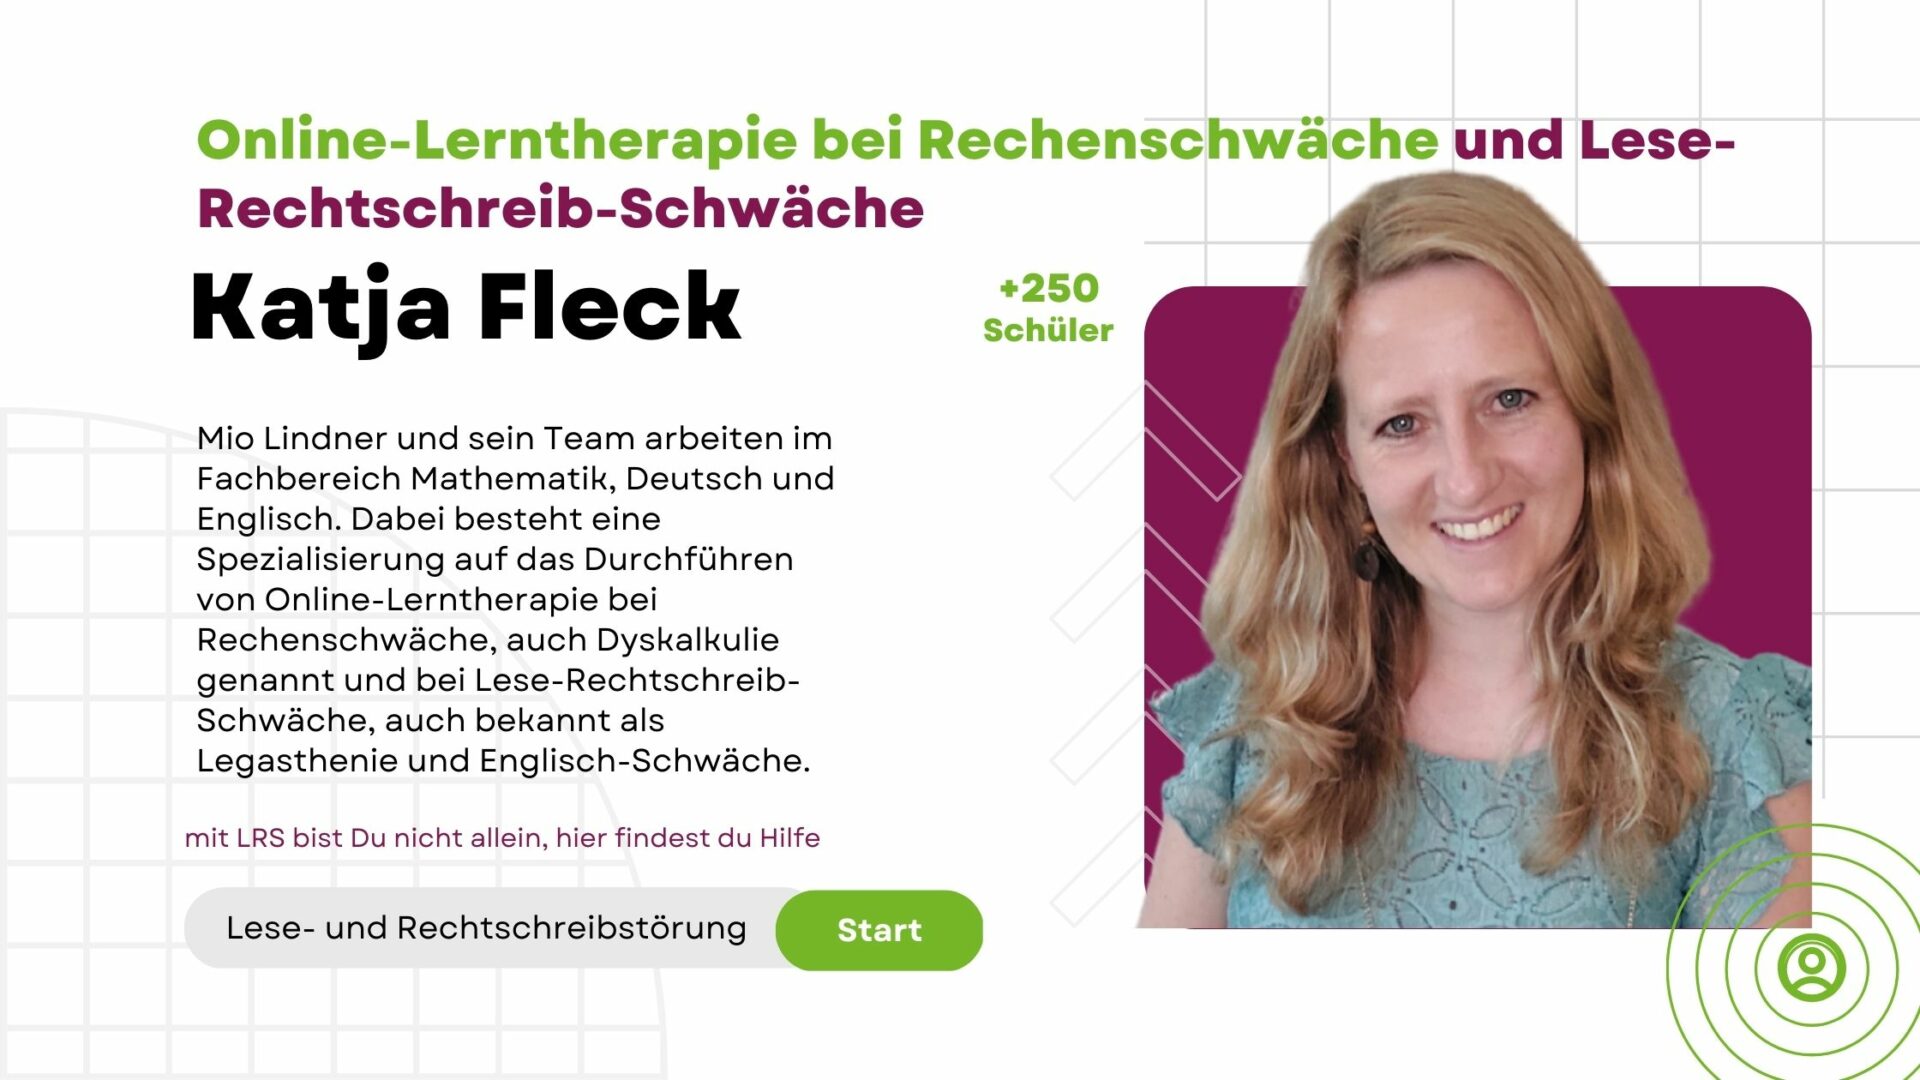 Katja Fleck - Online-Lerntherapie bei Rechenschwäche und Lese-Rechtschreib-Schwäche